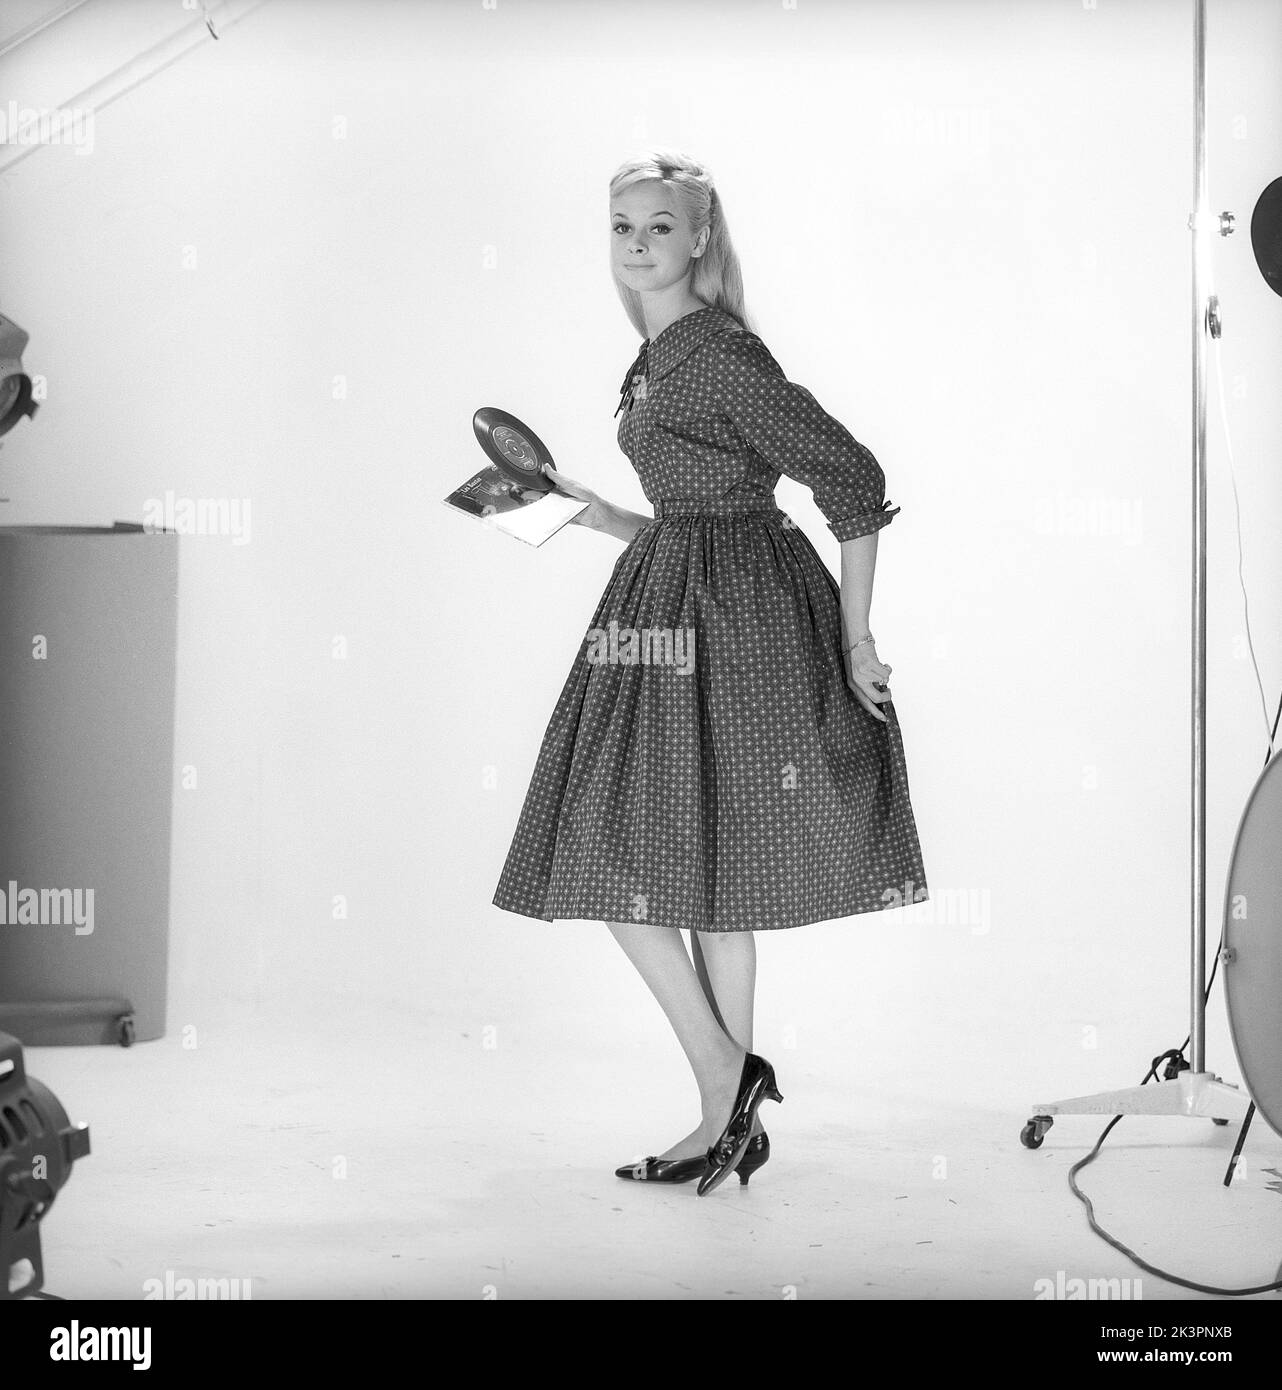 1950s Mode. Eine junge Frau in einem typischen Kleid aus dem Jahr 1950s. Ein breites Rockkleid mit 50s geratteten Stoffen. Schweden 1959. Kristoffersson Ref. CO93-10 Stockfoto